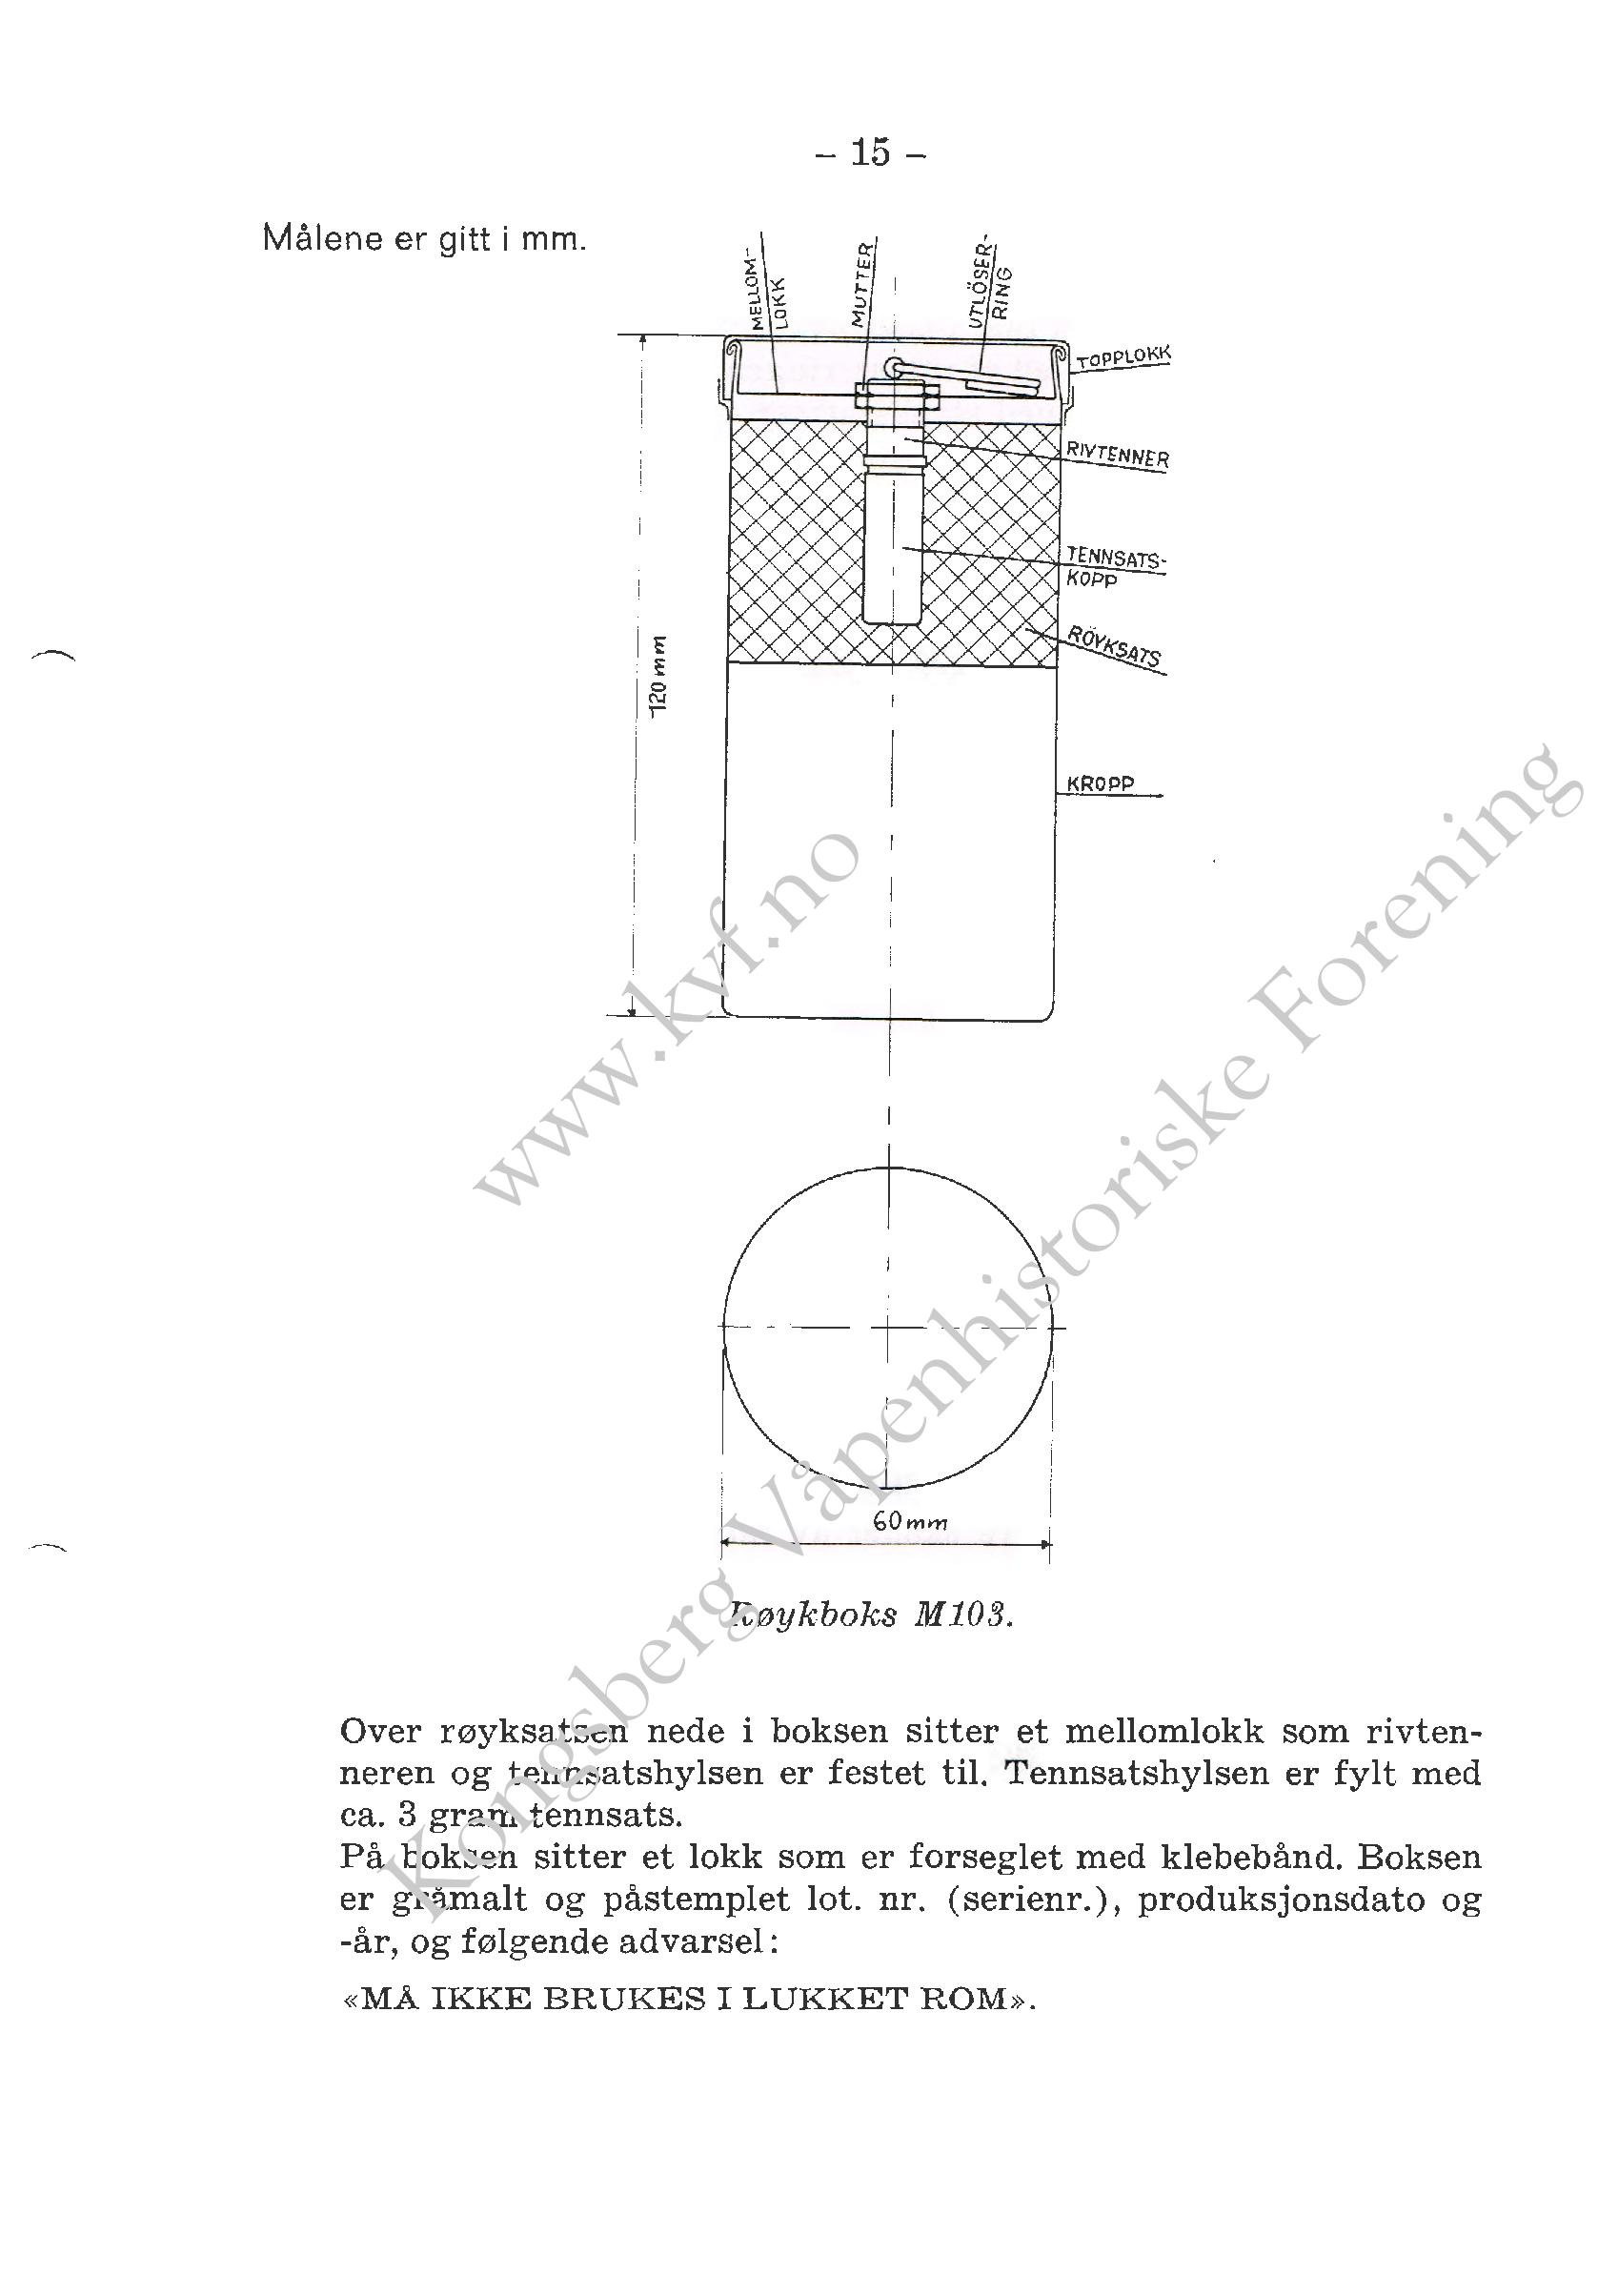 ./doc/reglement/Gasspistol/Beskrivelse-Signal-Gasspistol-1966-page-018.jpg